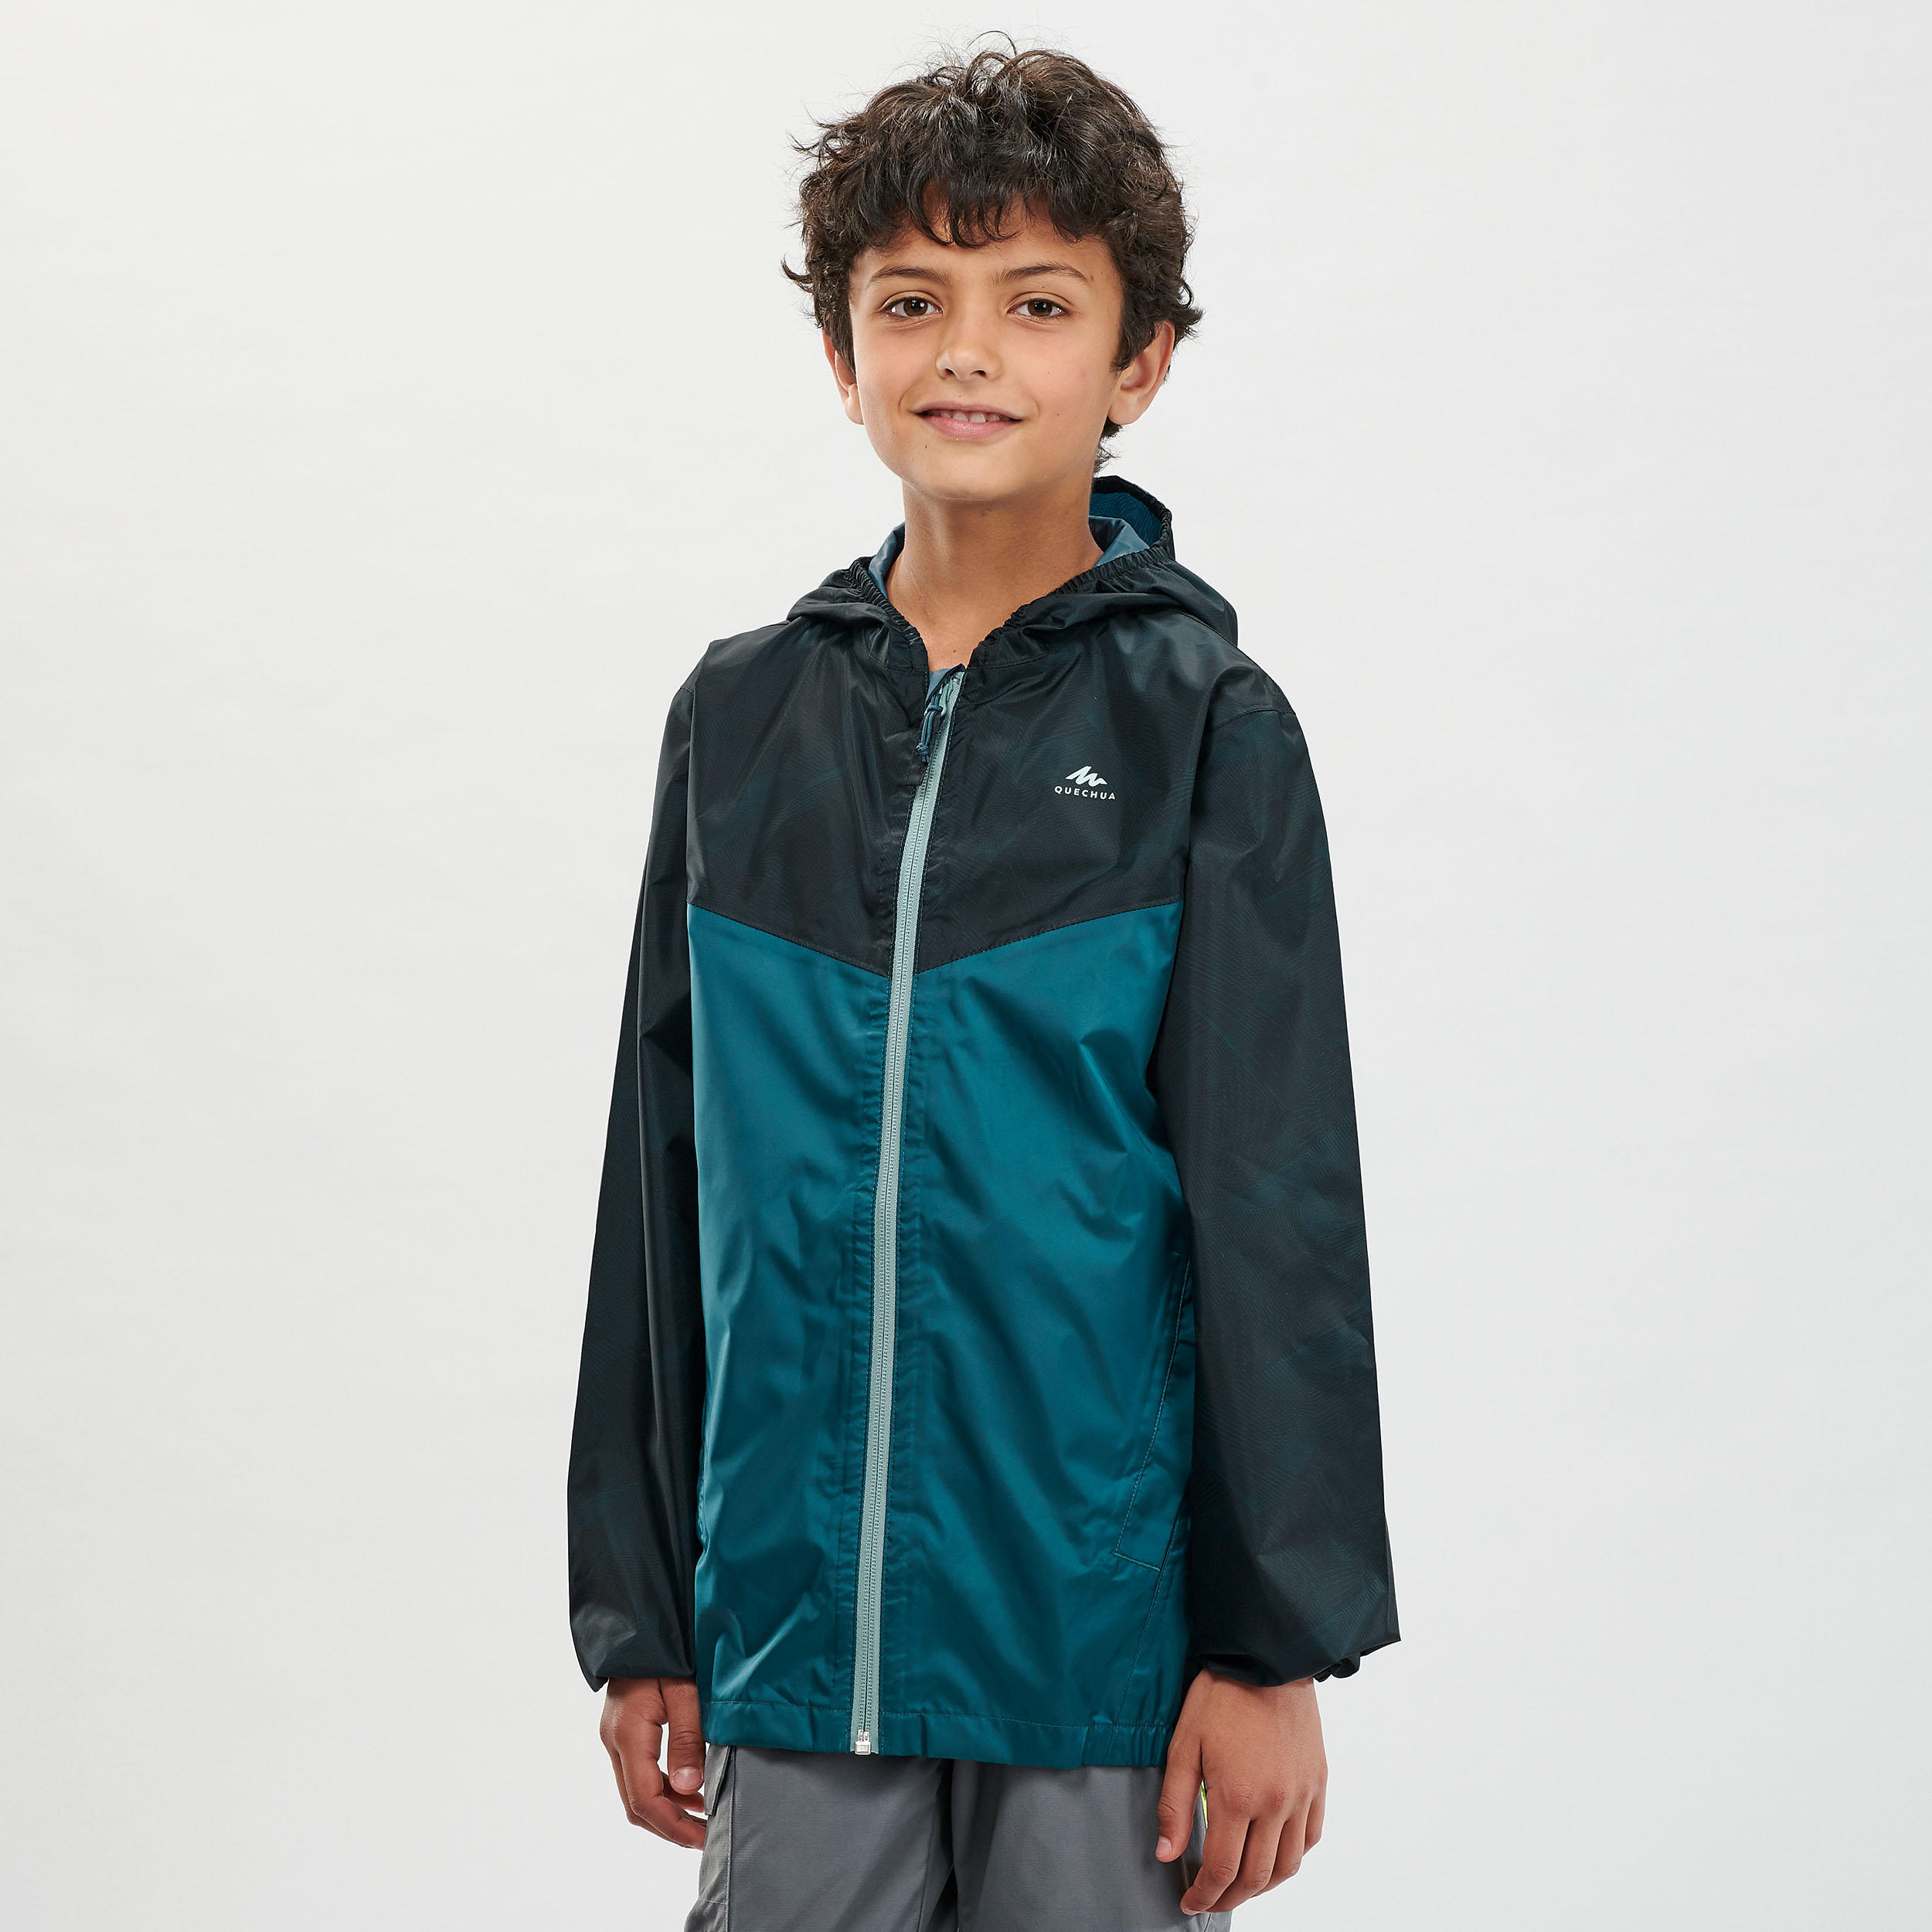 Kids’ Hiking Waterproof Jacket MH150  7-15 Years - green  1/7